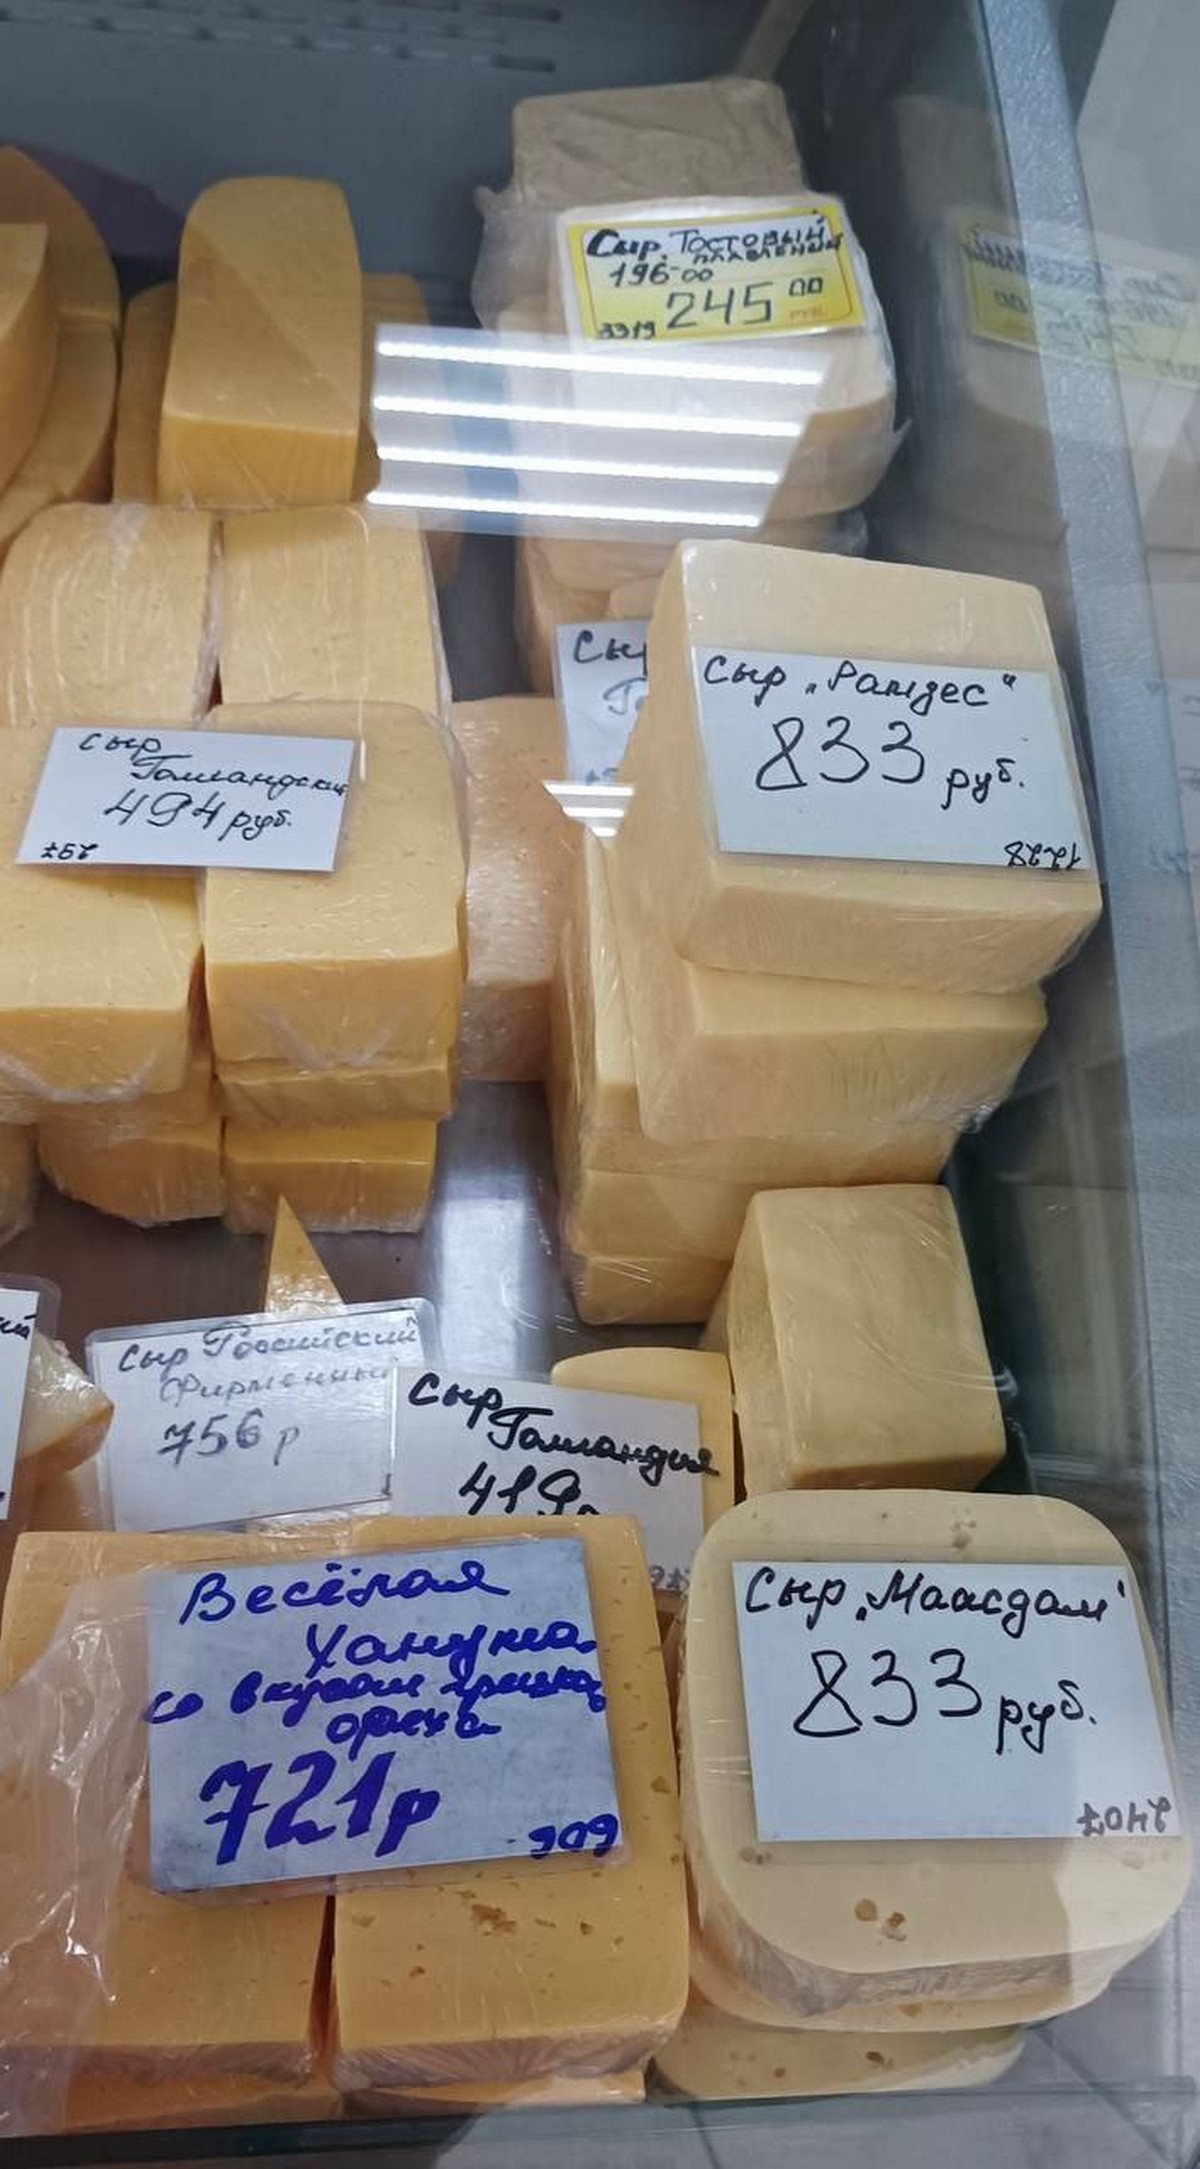 1000 рублів за кг ковбаси: у мережі показали ціни на продукти в окупованому Енергодарі